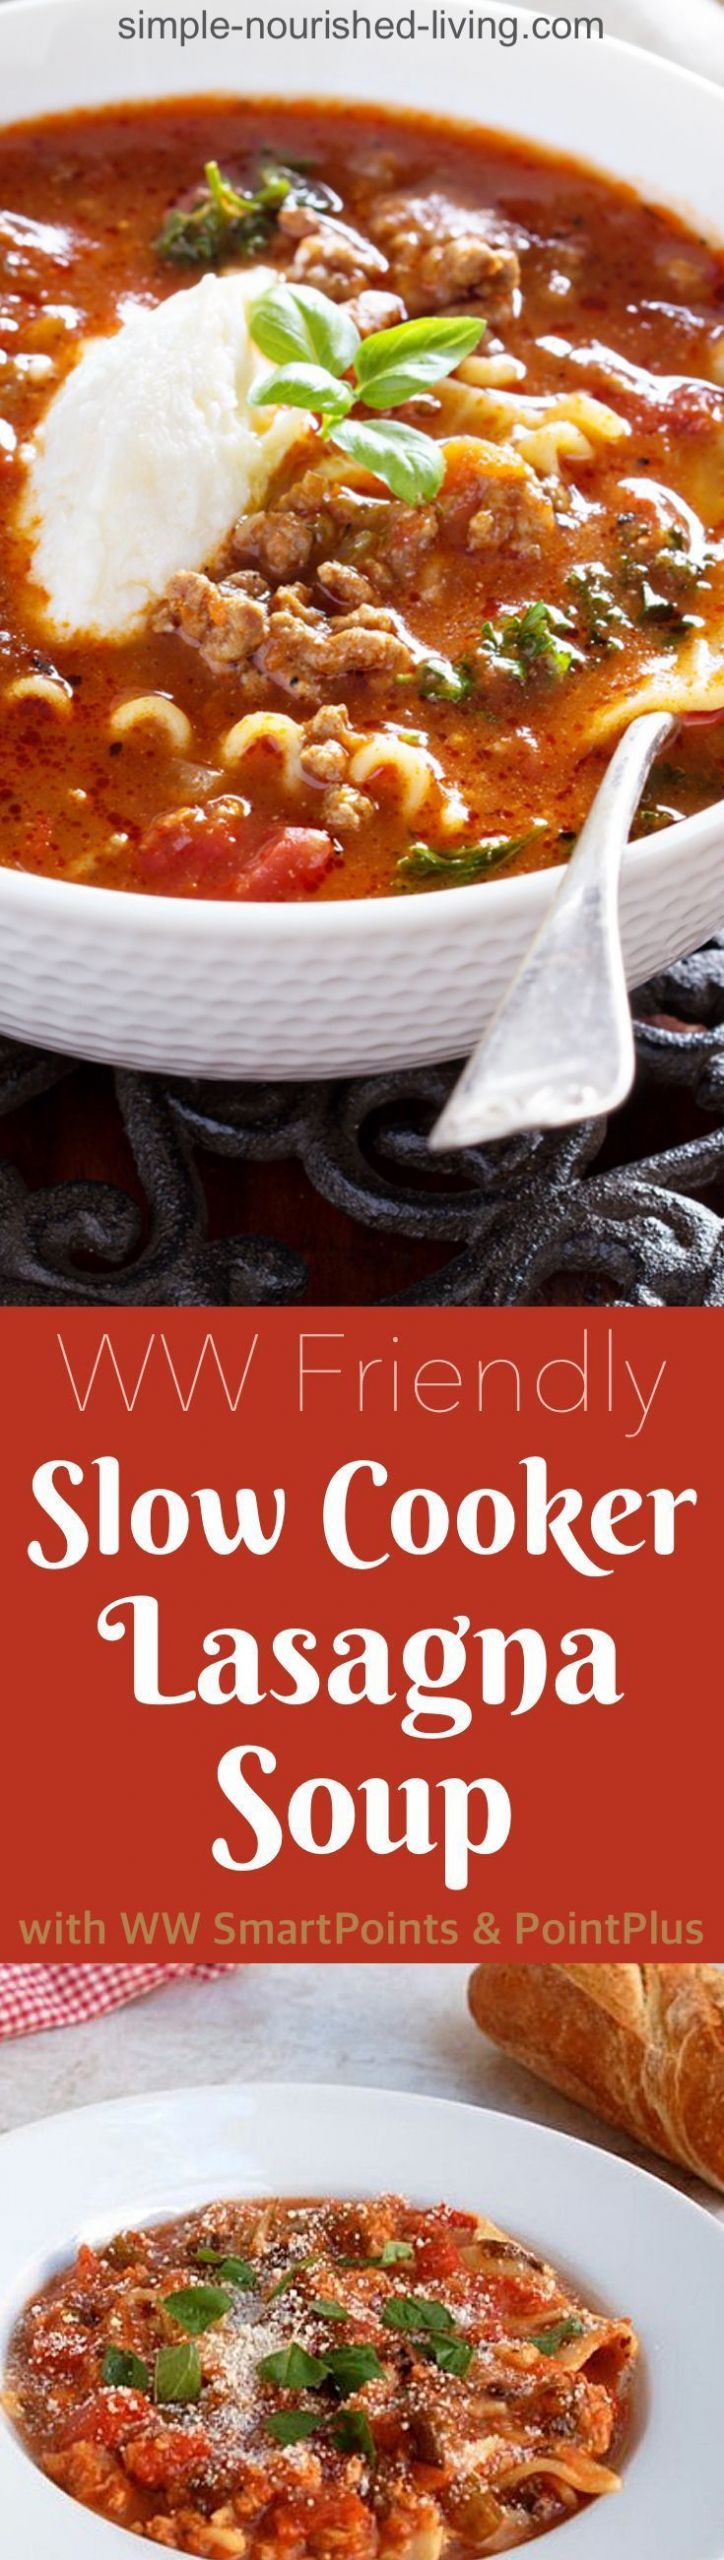 Weight Watcher Slow Cooker Lasagna
 Skinny Slow Cooker Lasagna Soup Recipe